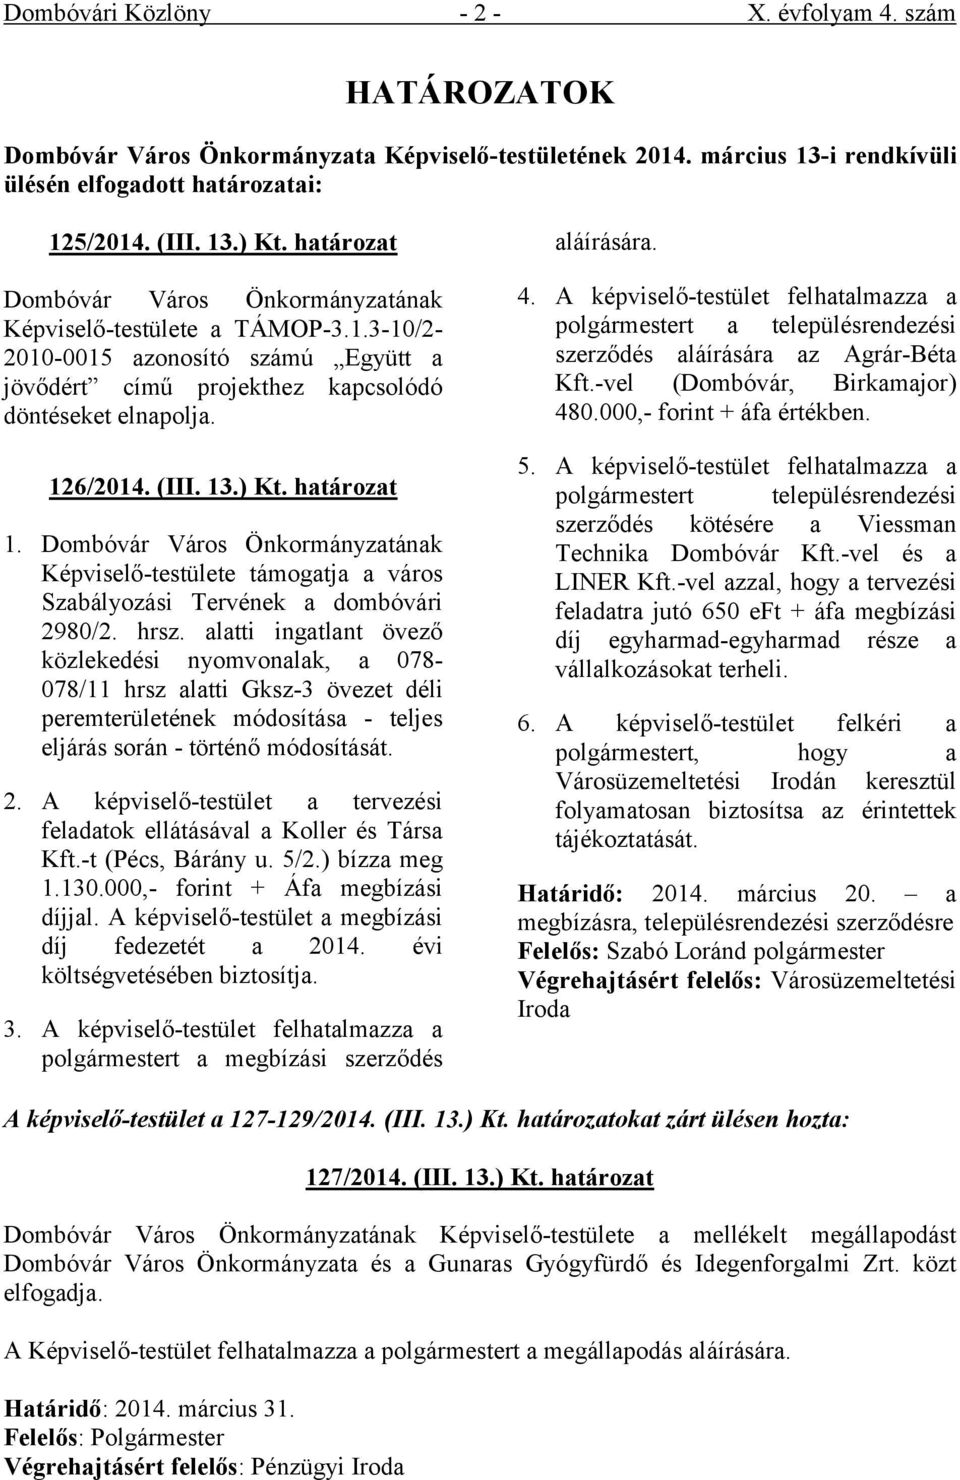 Képviselő-testülete támogatja a város Szabályozási Tervének a dombóvári 2980/2. hrsz.